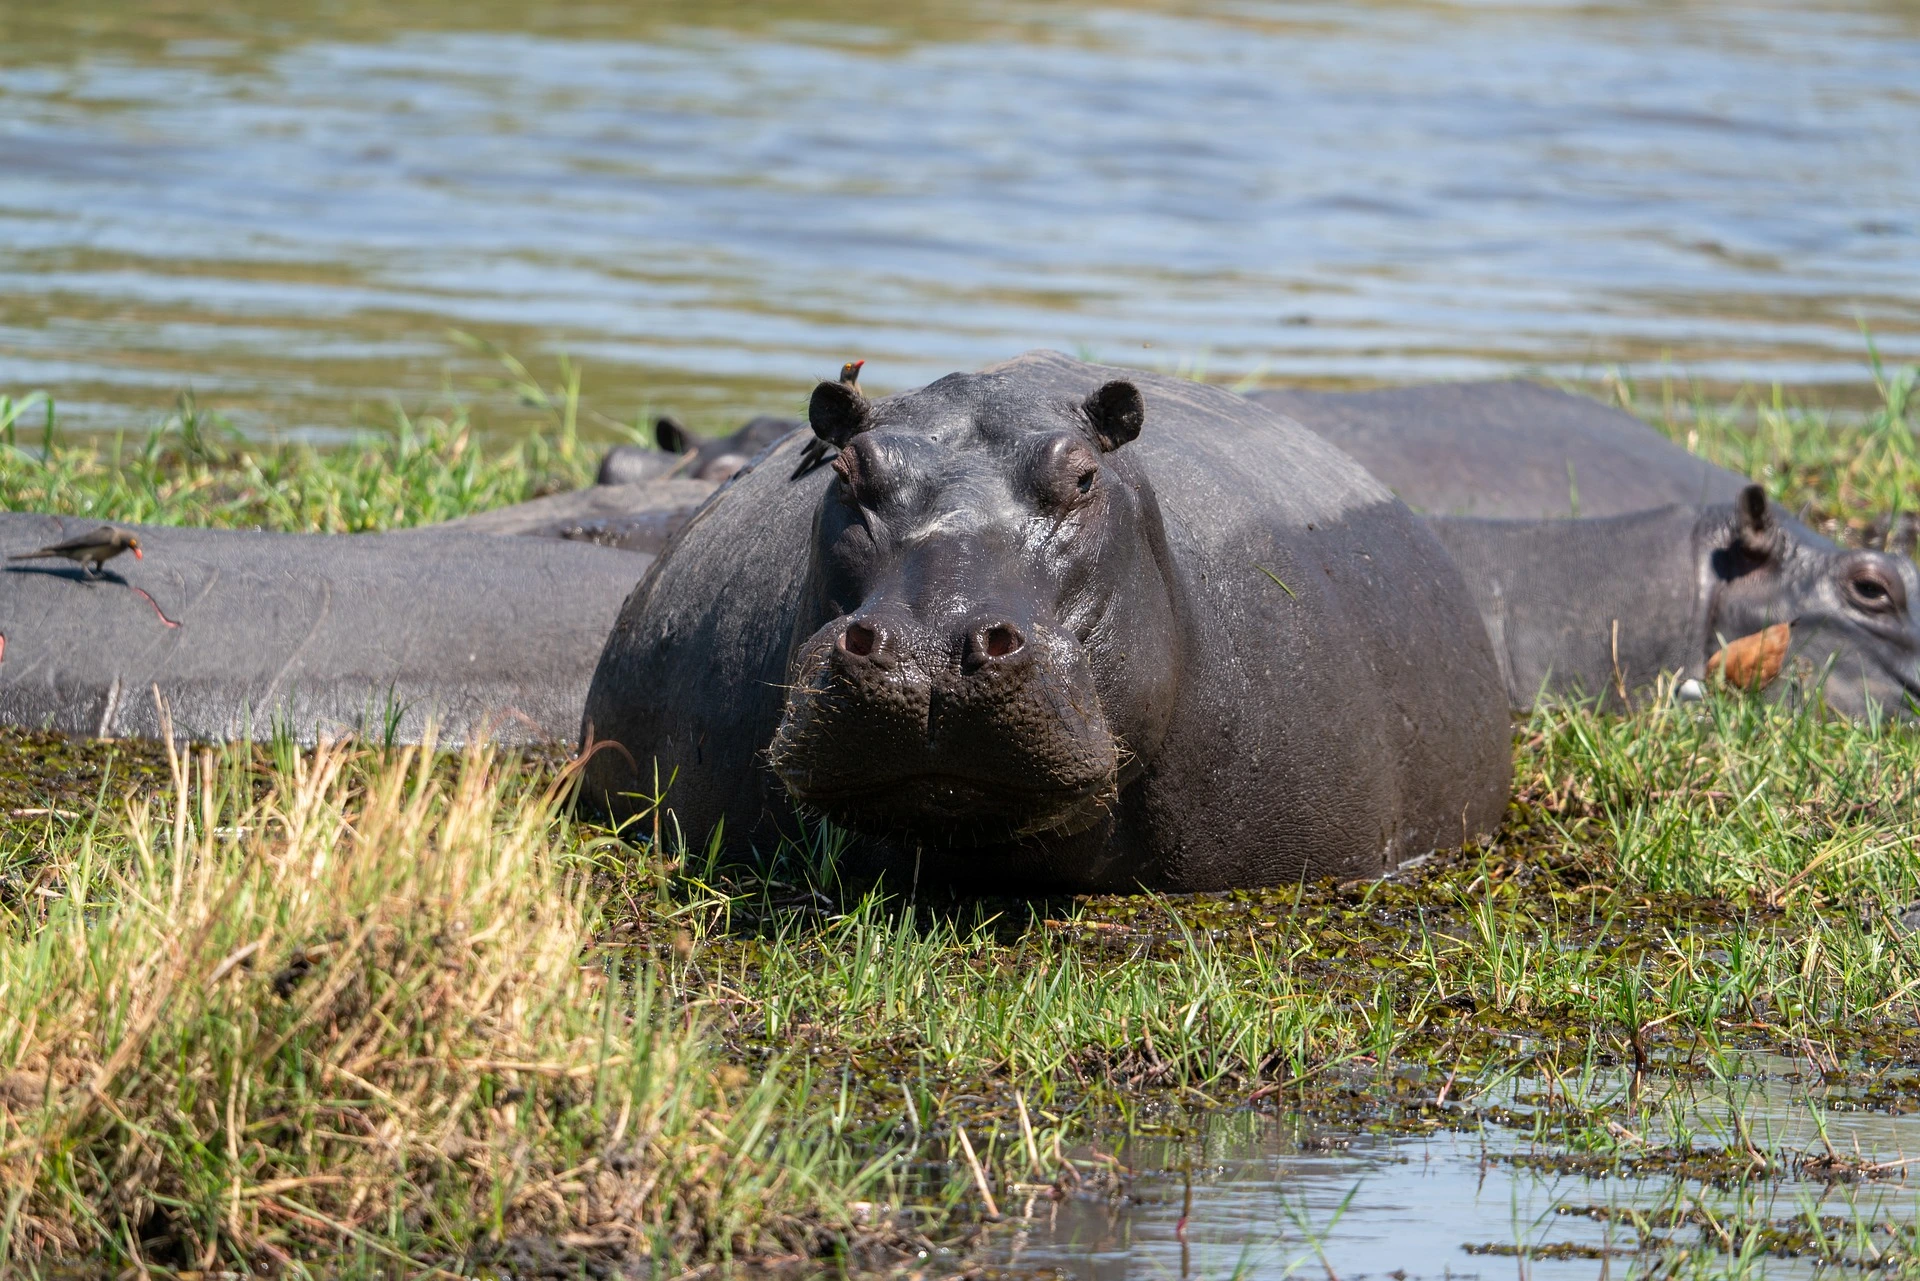 Okavango Delta in Botswana - Hippo in Water